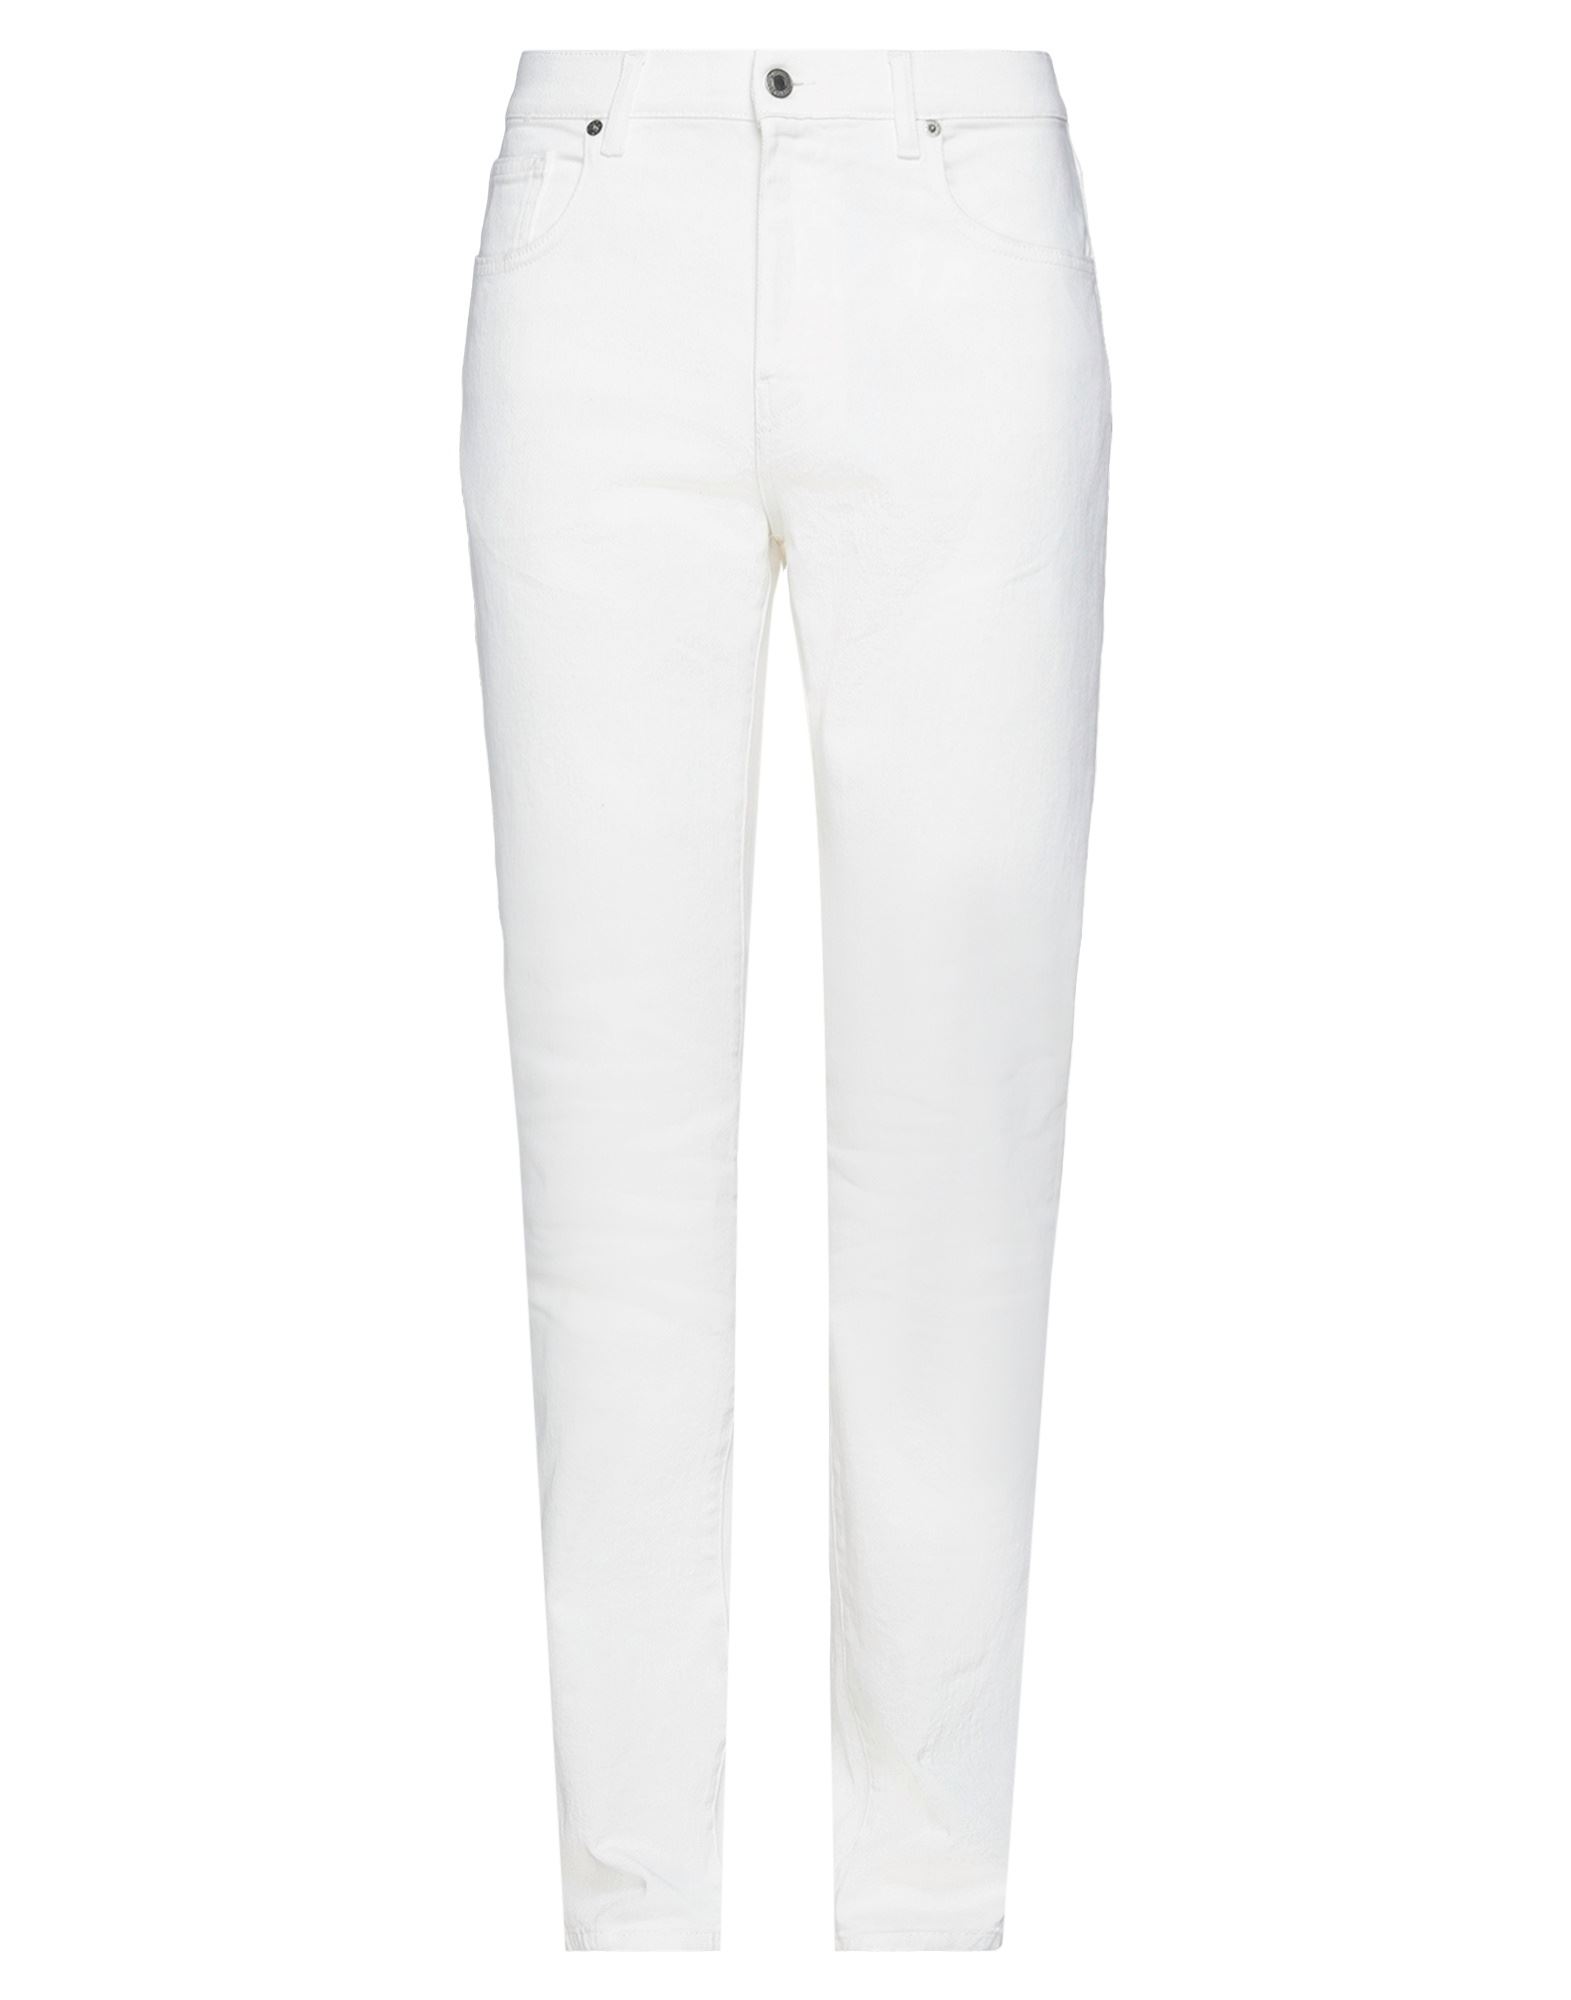 Shop Moschino Man Jeans White Size 38 Cotton, Elastane